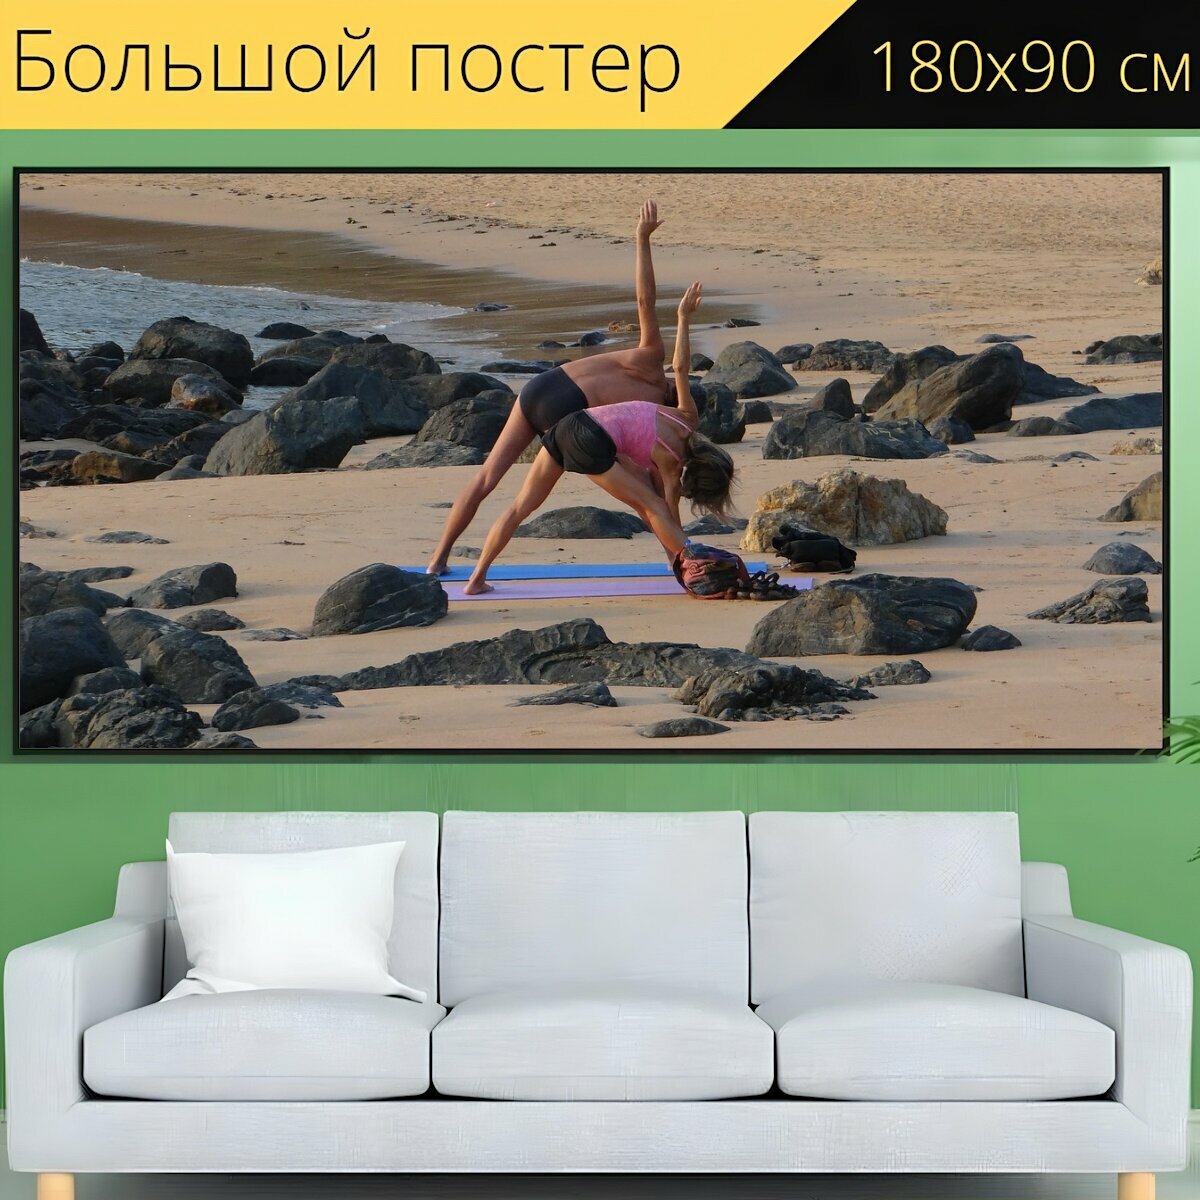 Большой постер "Йога, упражняться, упражнение" 180 x 90 см. для интерьера